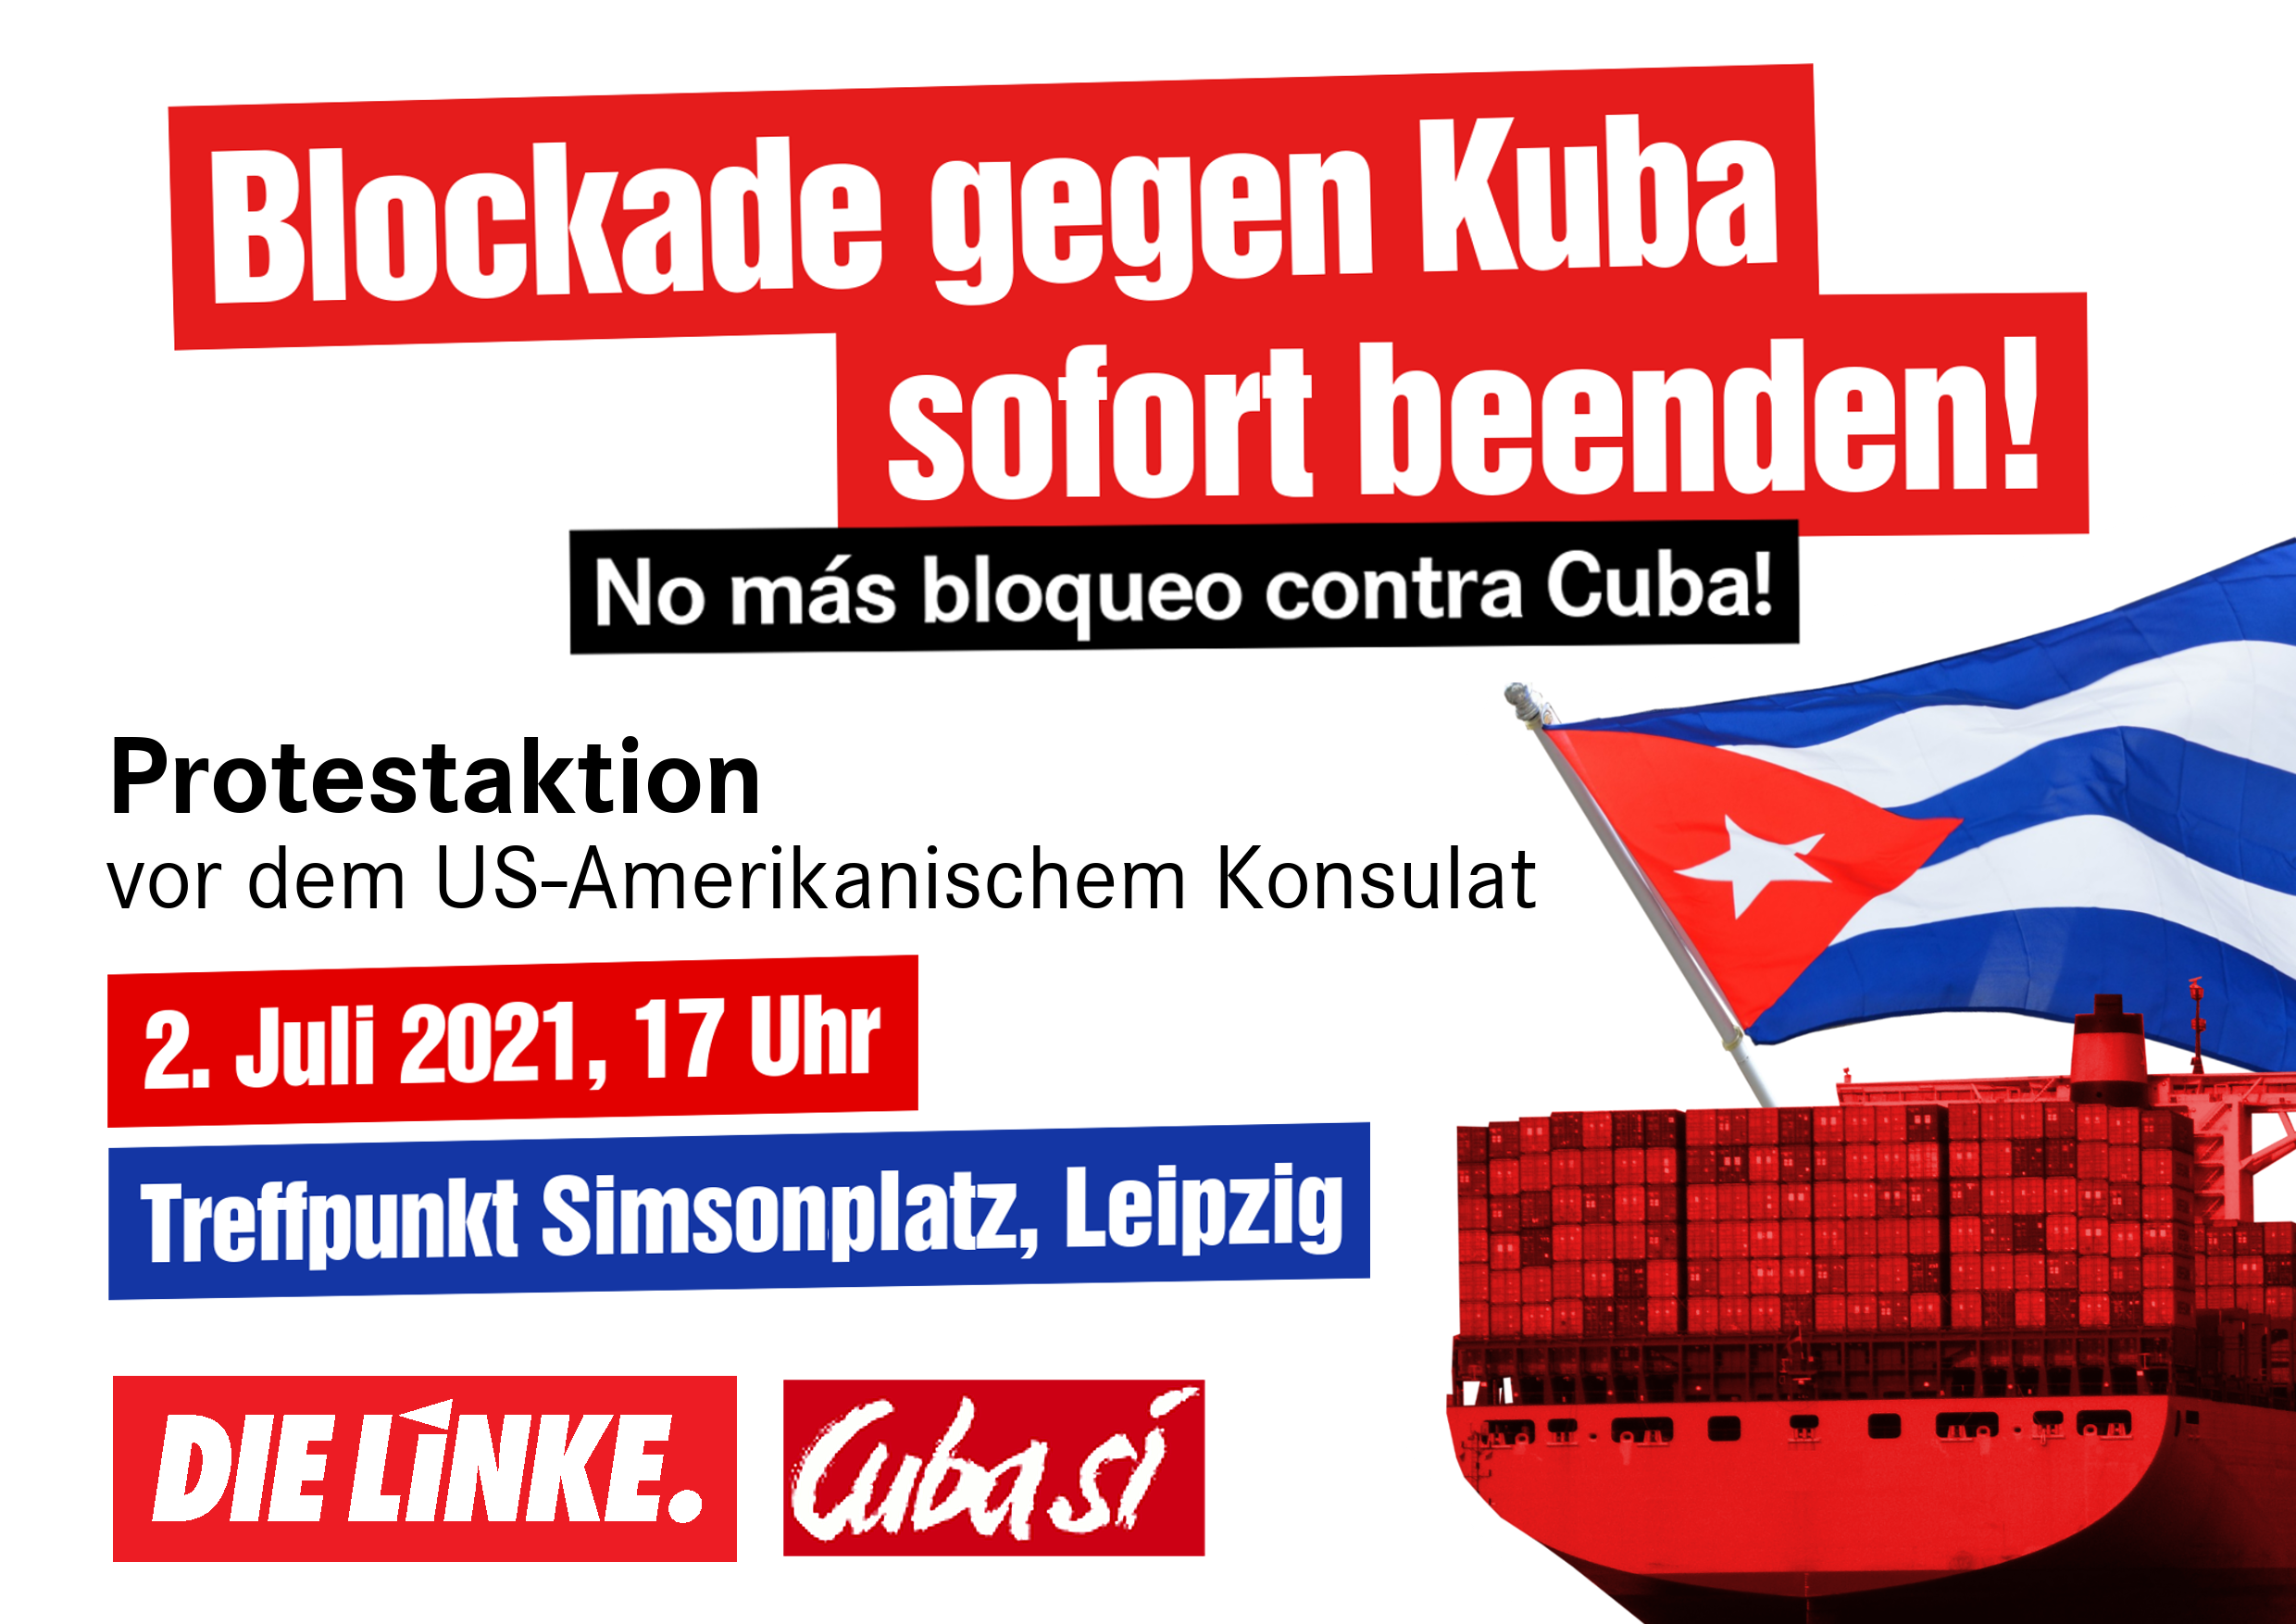 Protestaktion: Blockade gegen Kuba sofort beenden